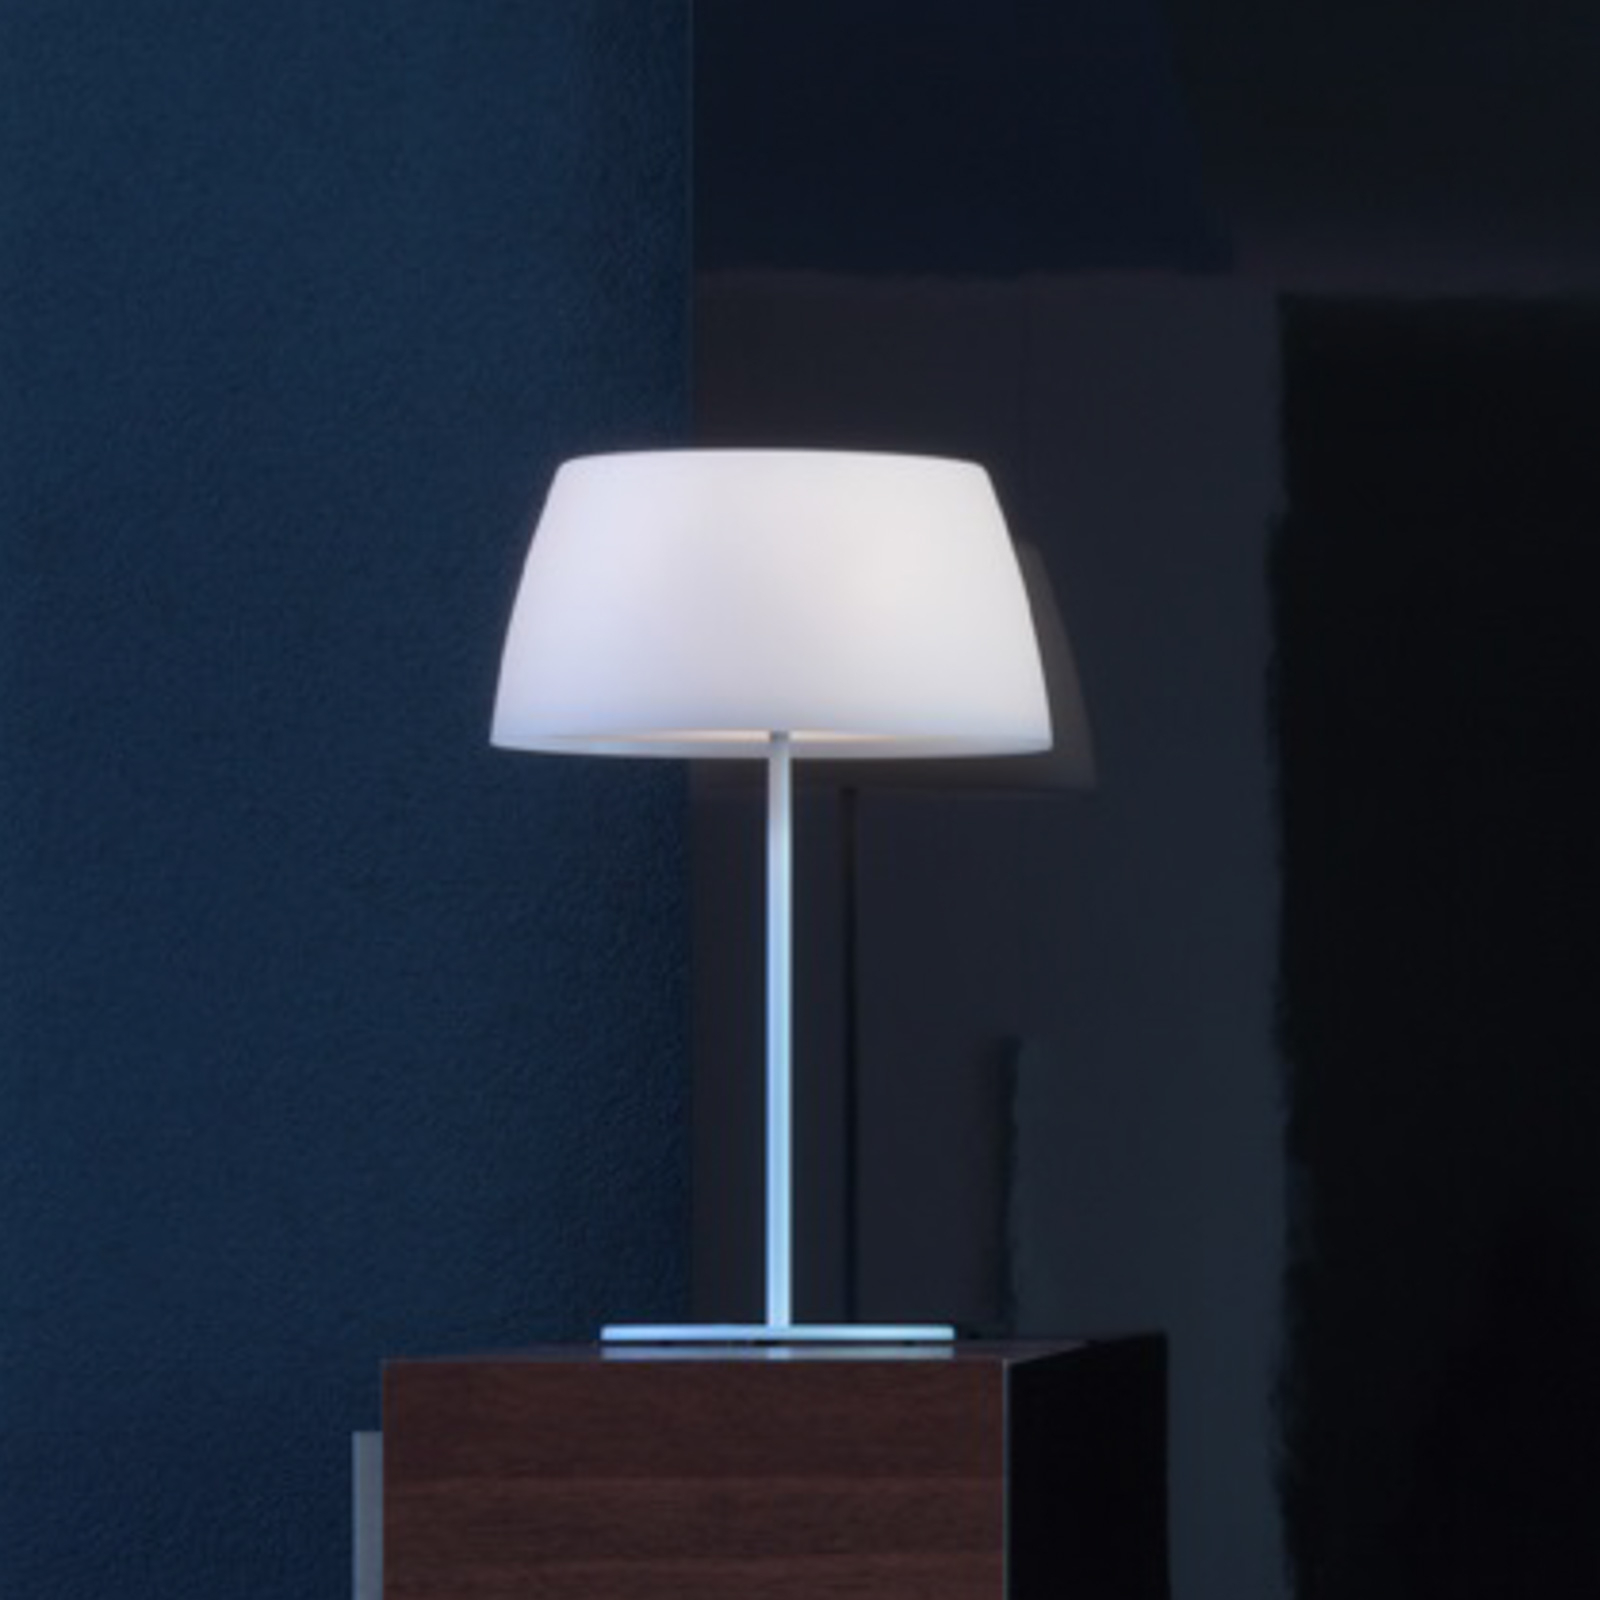 Prandina Ginger T30 table lamp, white, Ø 36 cm